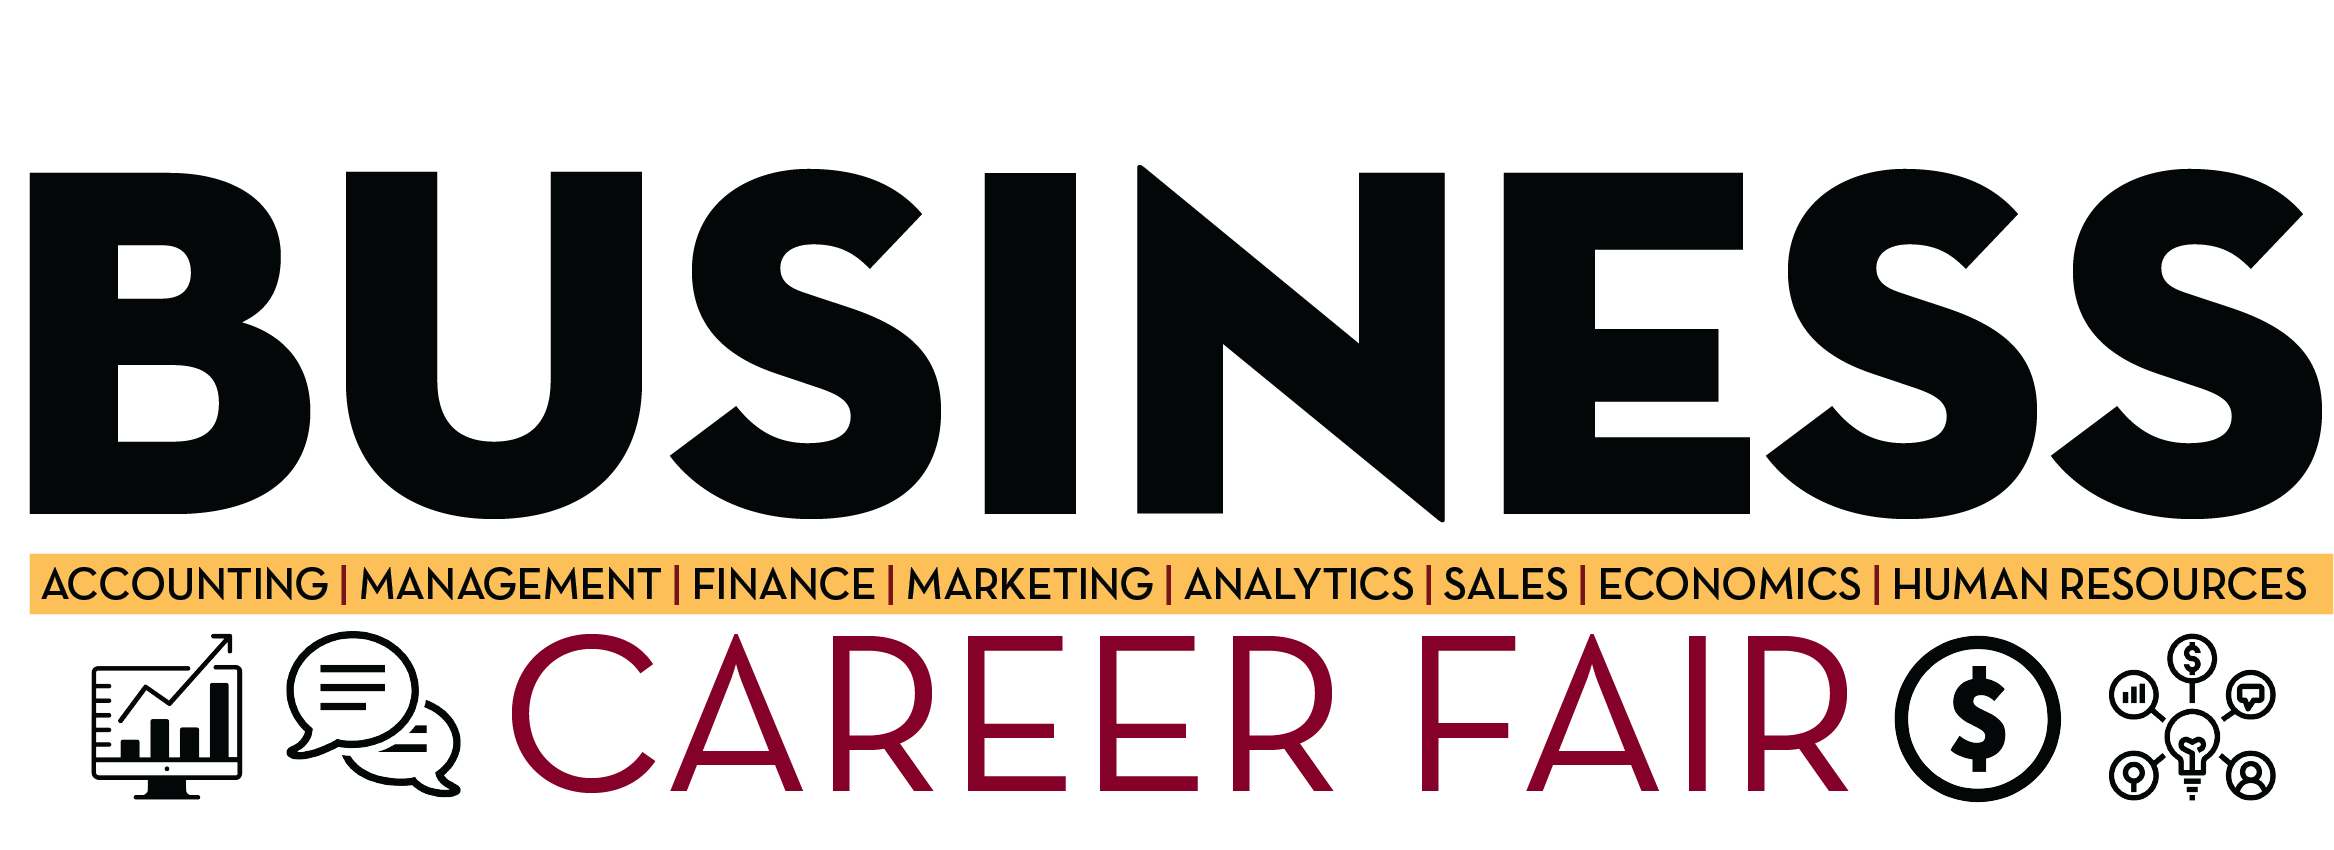 Business Career Fair Logo